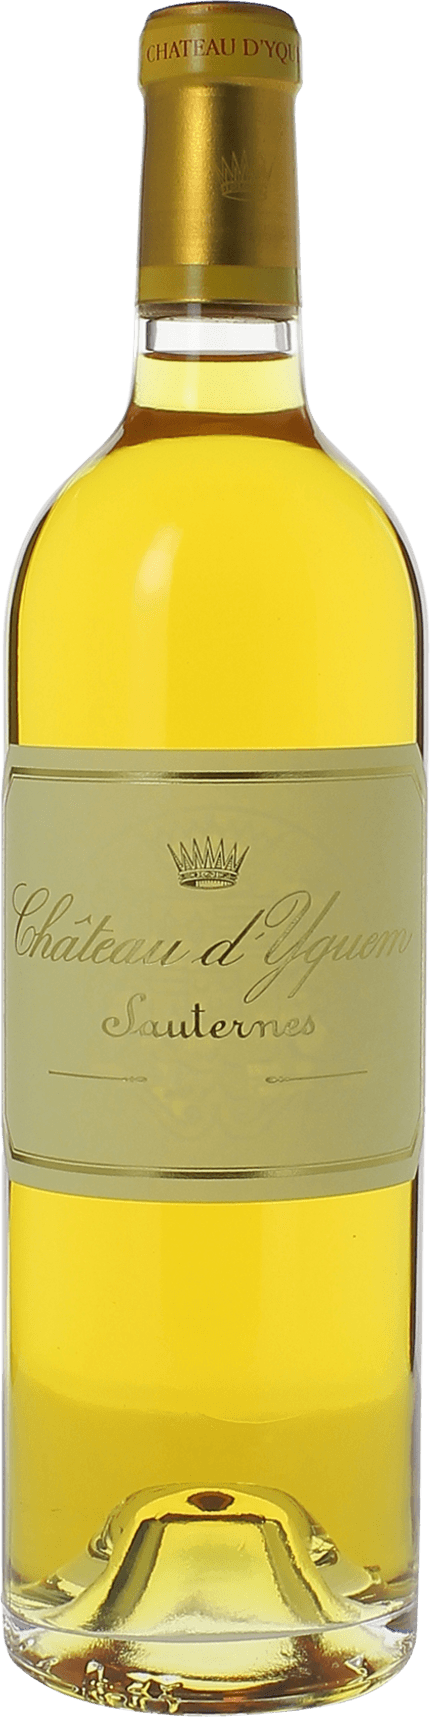 Yquem 1983 1er Grand cru class Sauternes, Bordeaux blanc